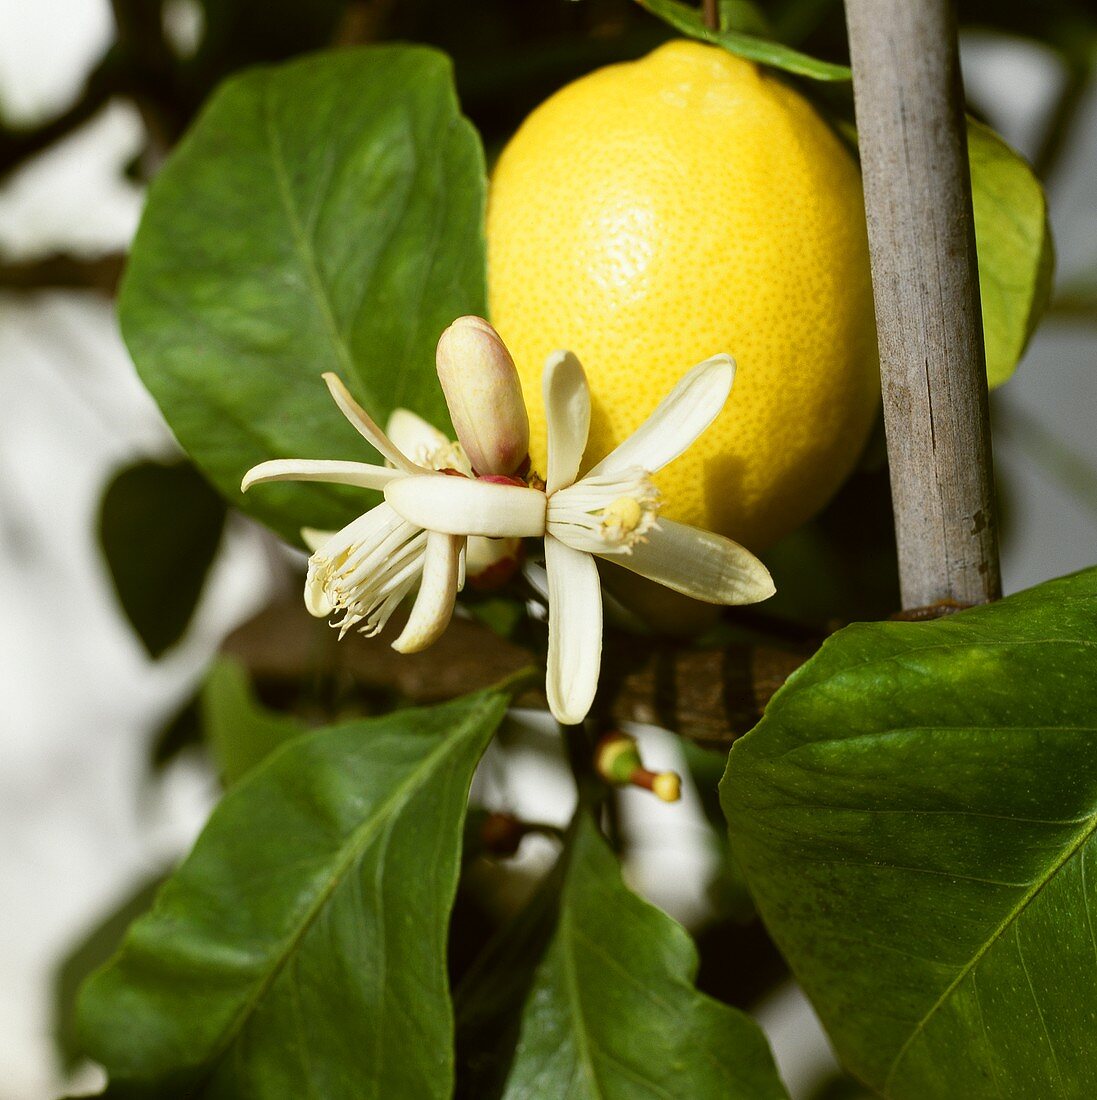 Zitronen mit Blüten am Baum (Citrus limon)